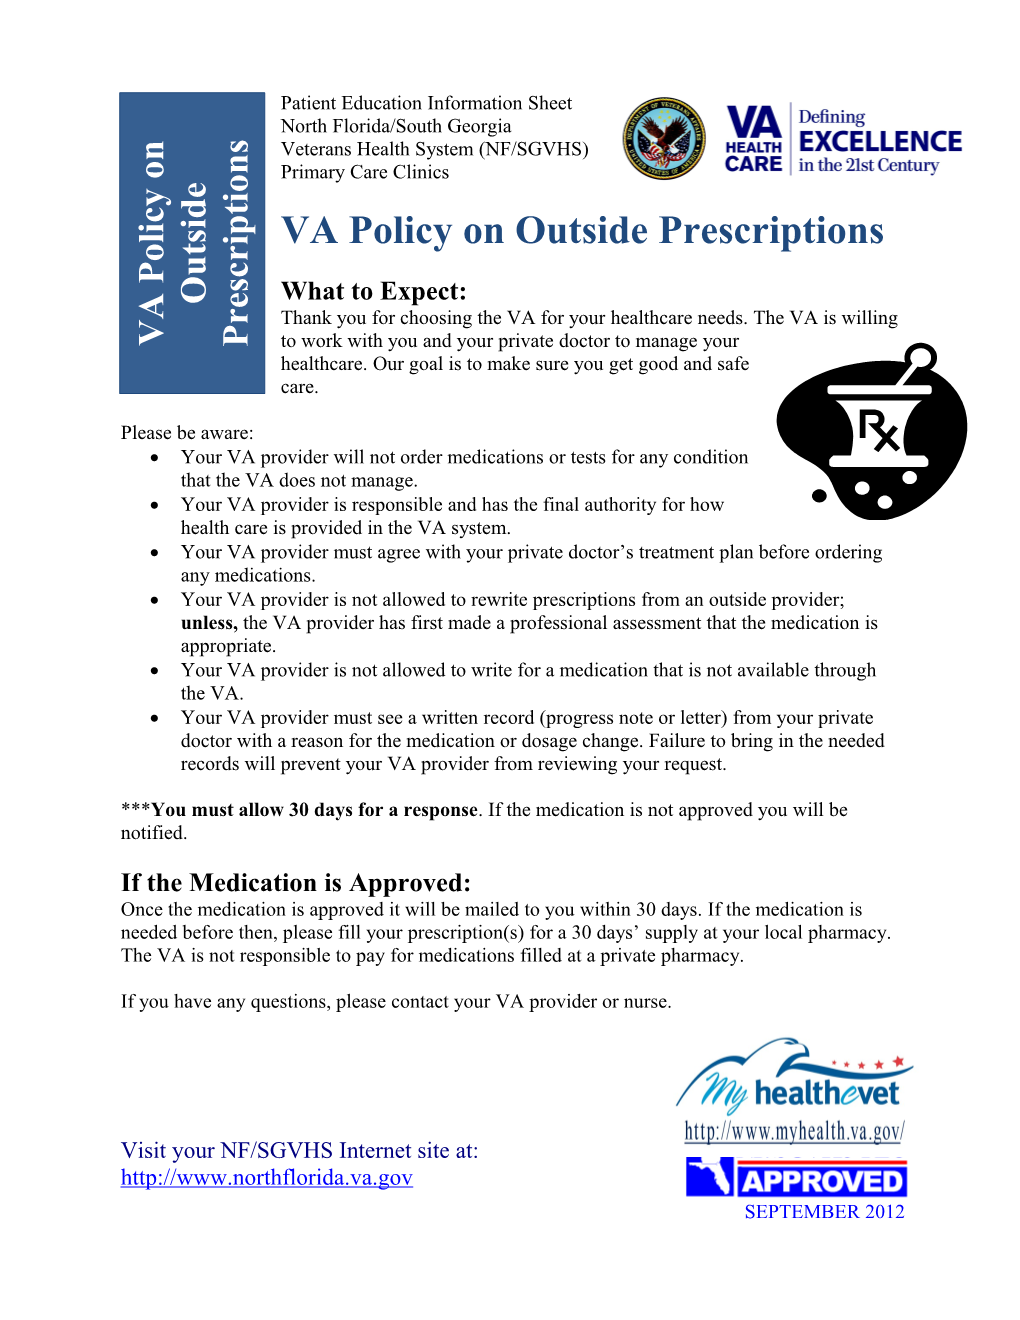 VA Policy For Outside Prescriptions